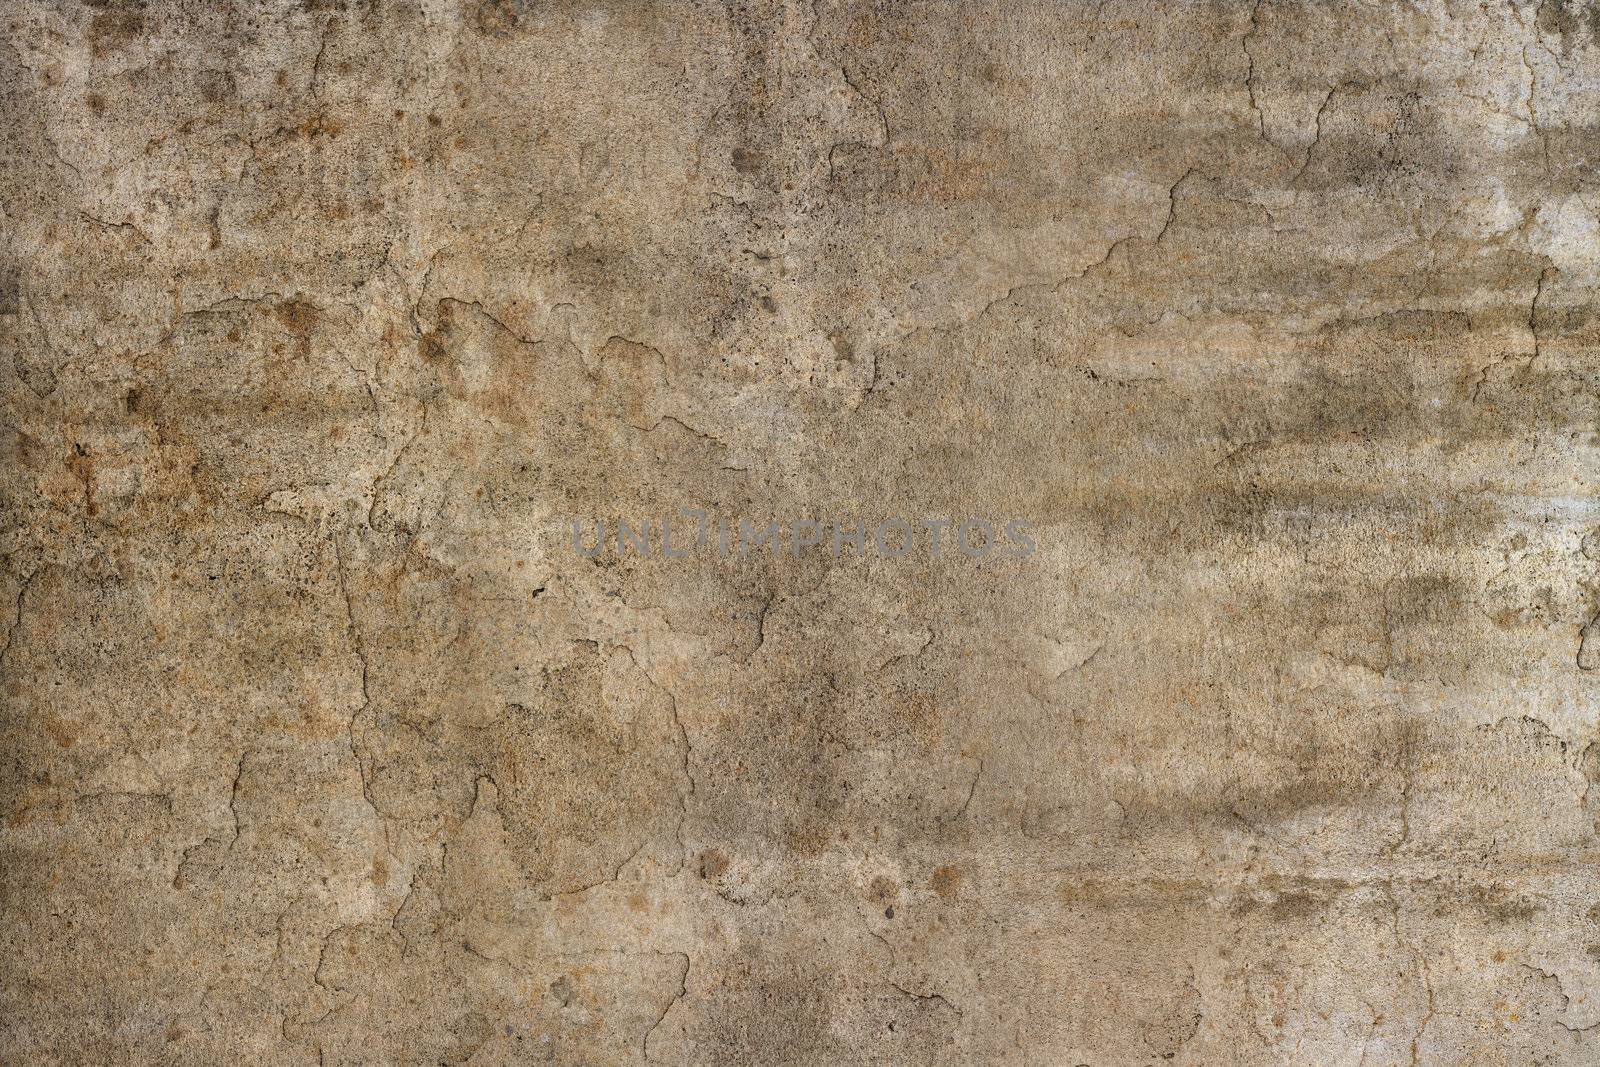 Very sharp brown grunge concrete texture